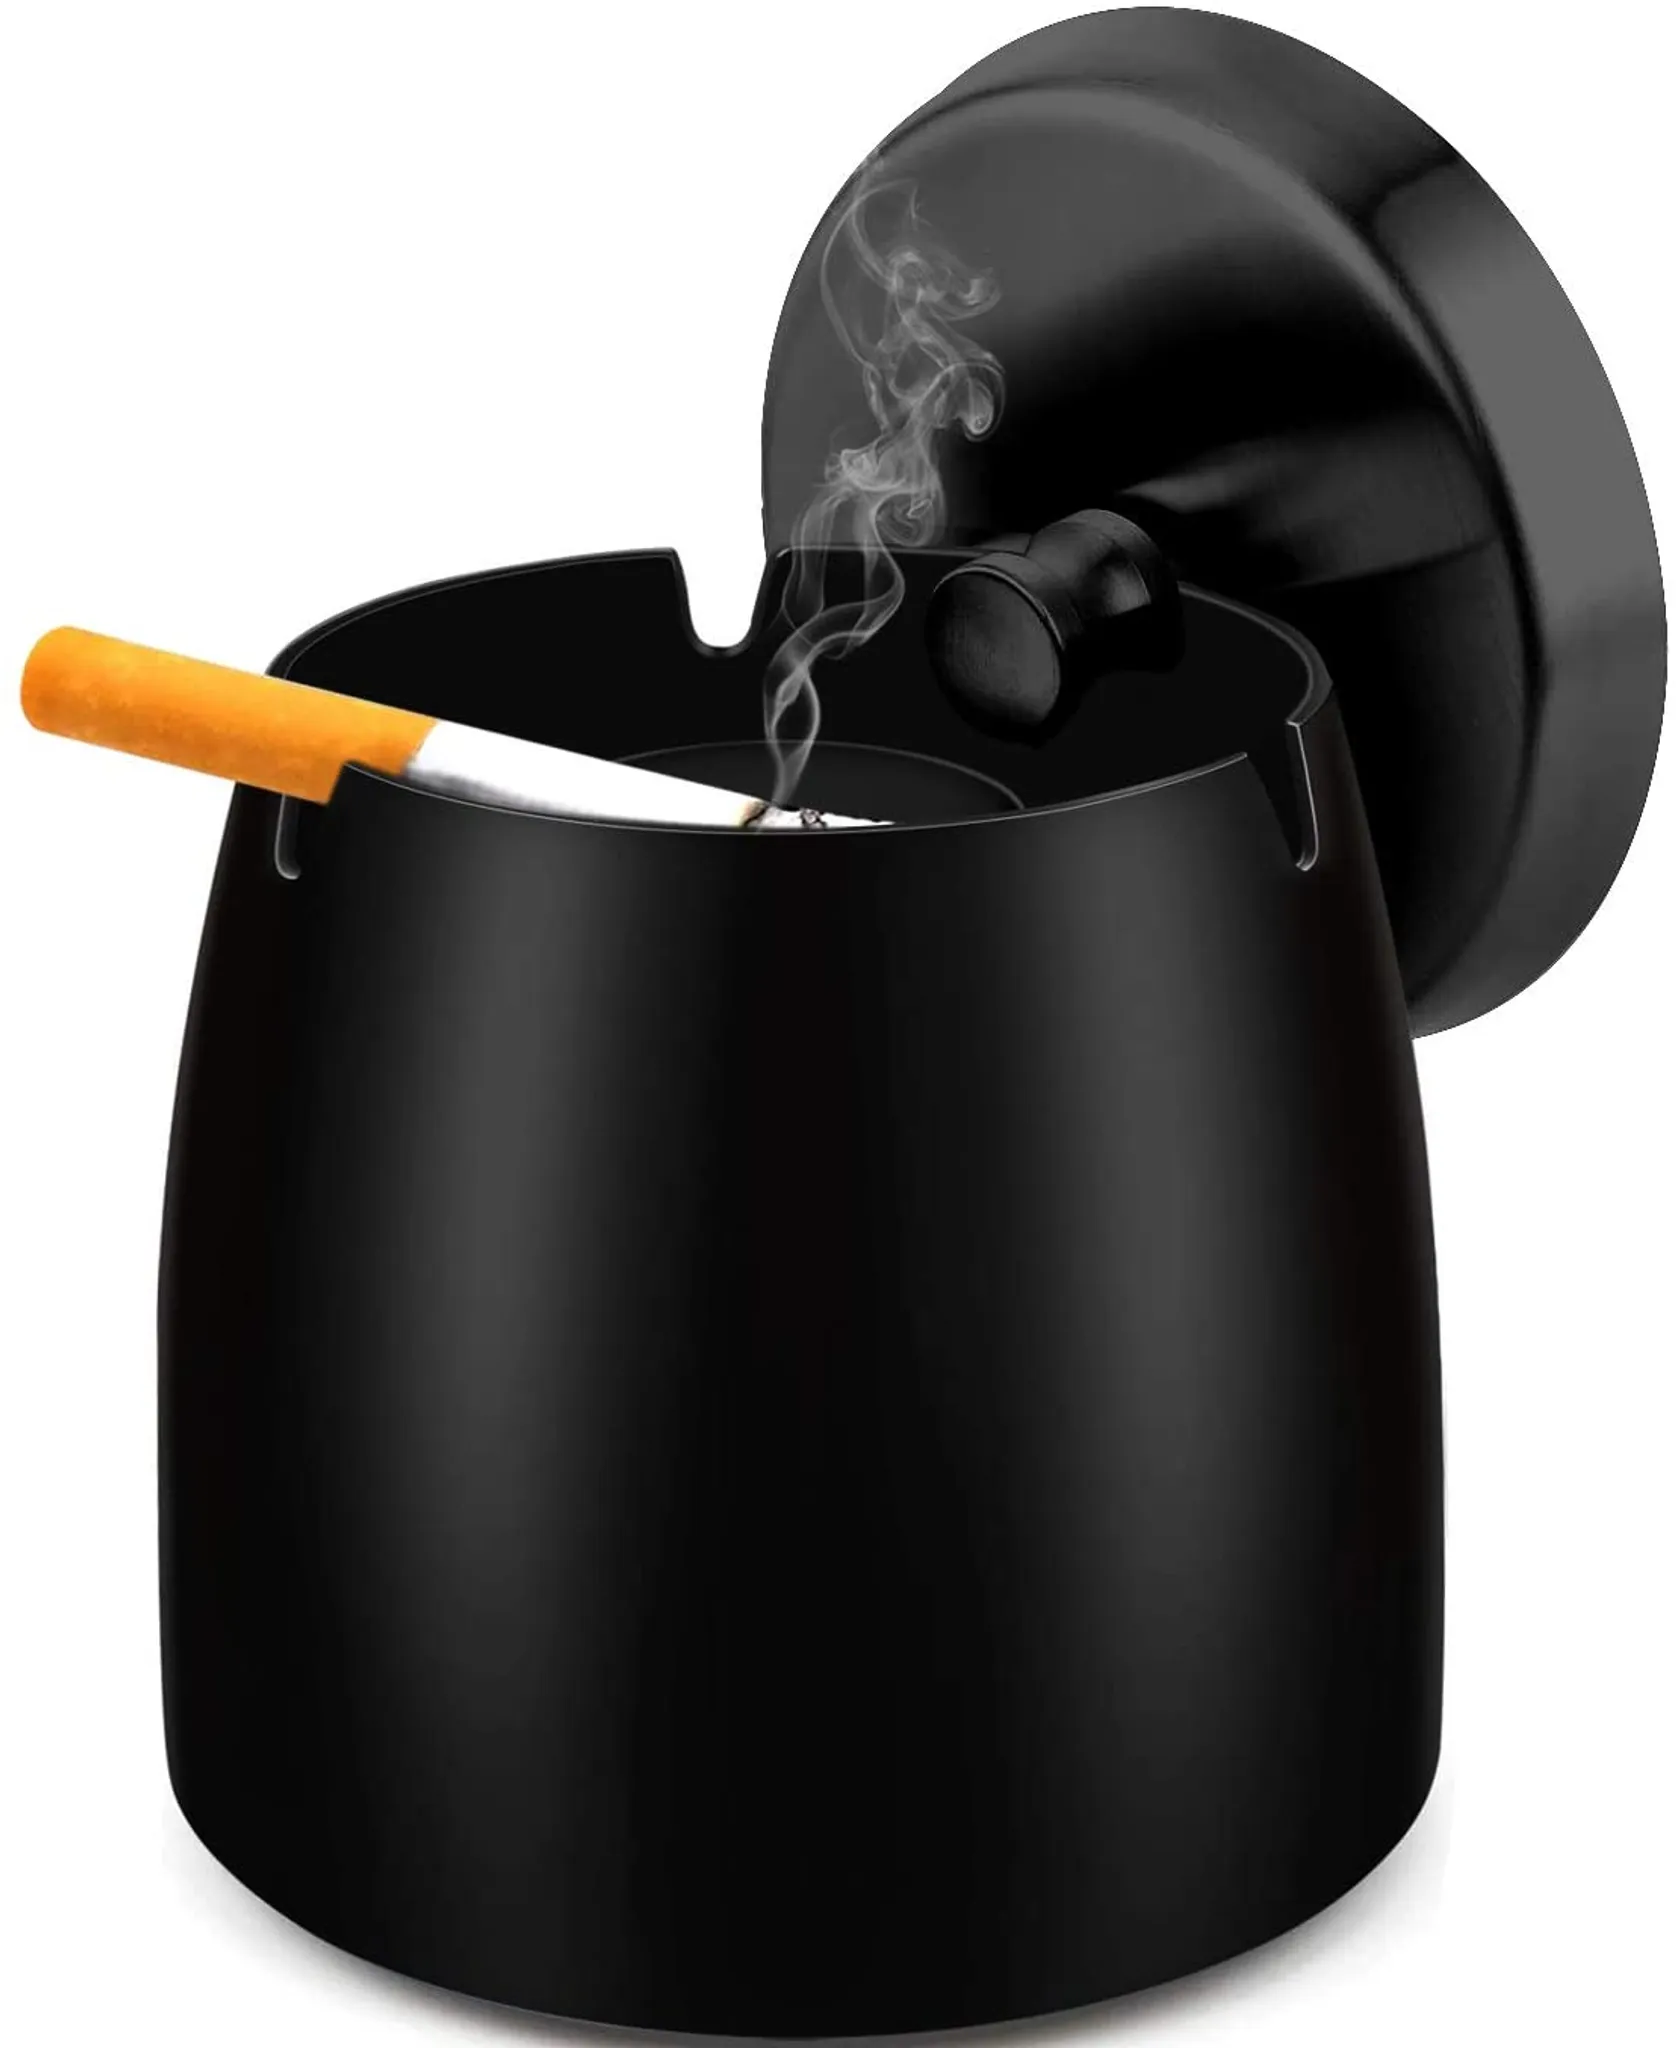 Funktionaler rauchfreier Aschenbecher, 2-in-1 Luftreiniger-Aschenbecher für  Zigaretten drinnen und draußen, Home Car Office